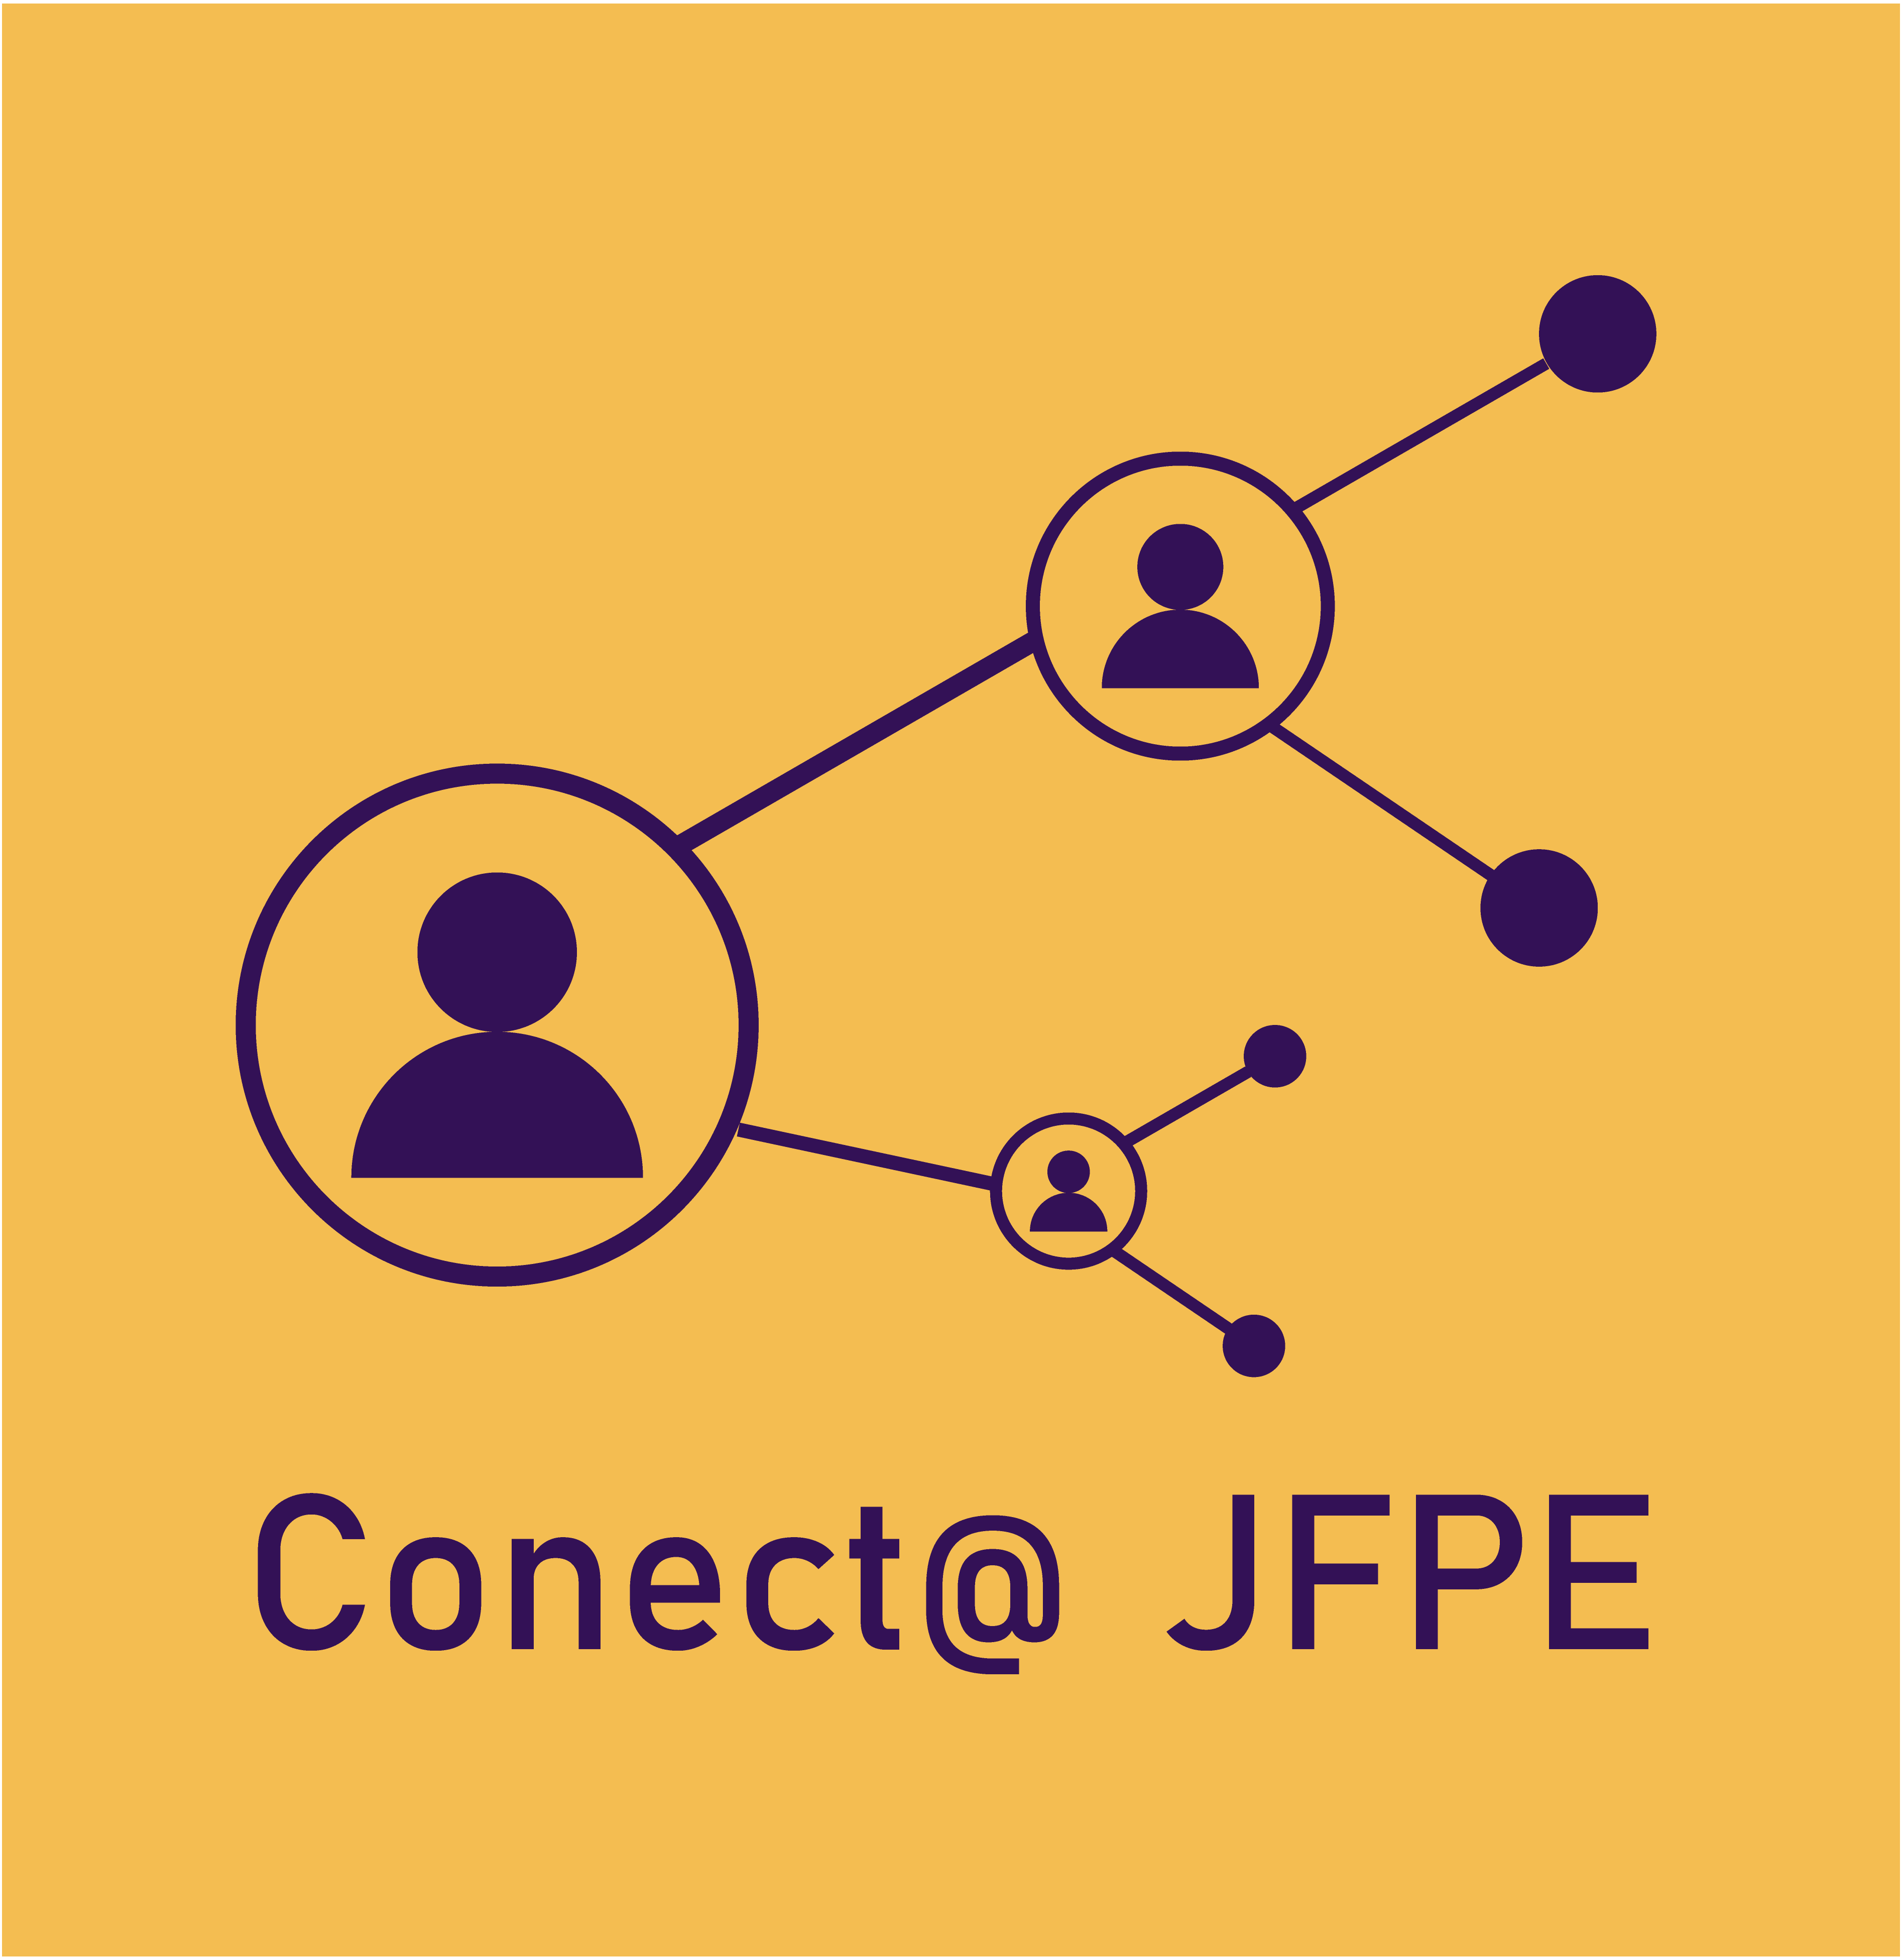 Conect@ JFPE